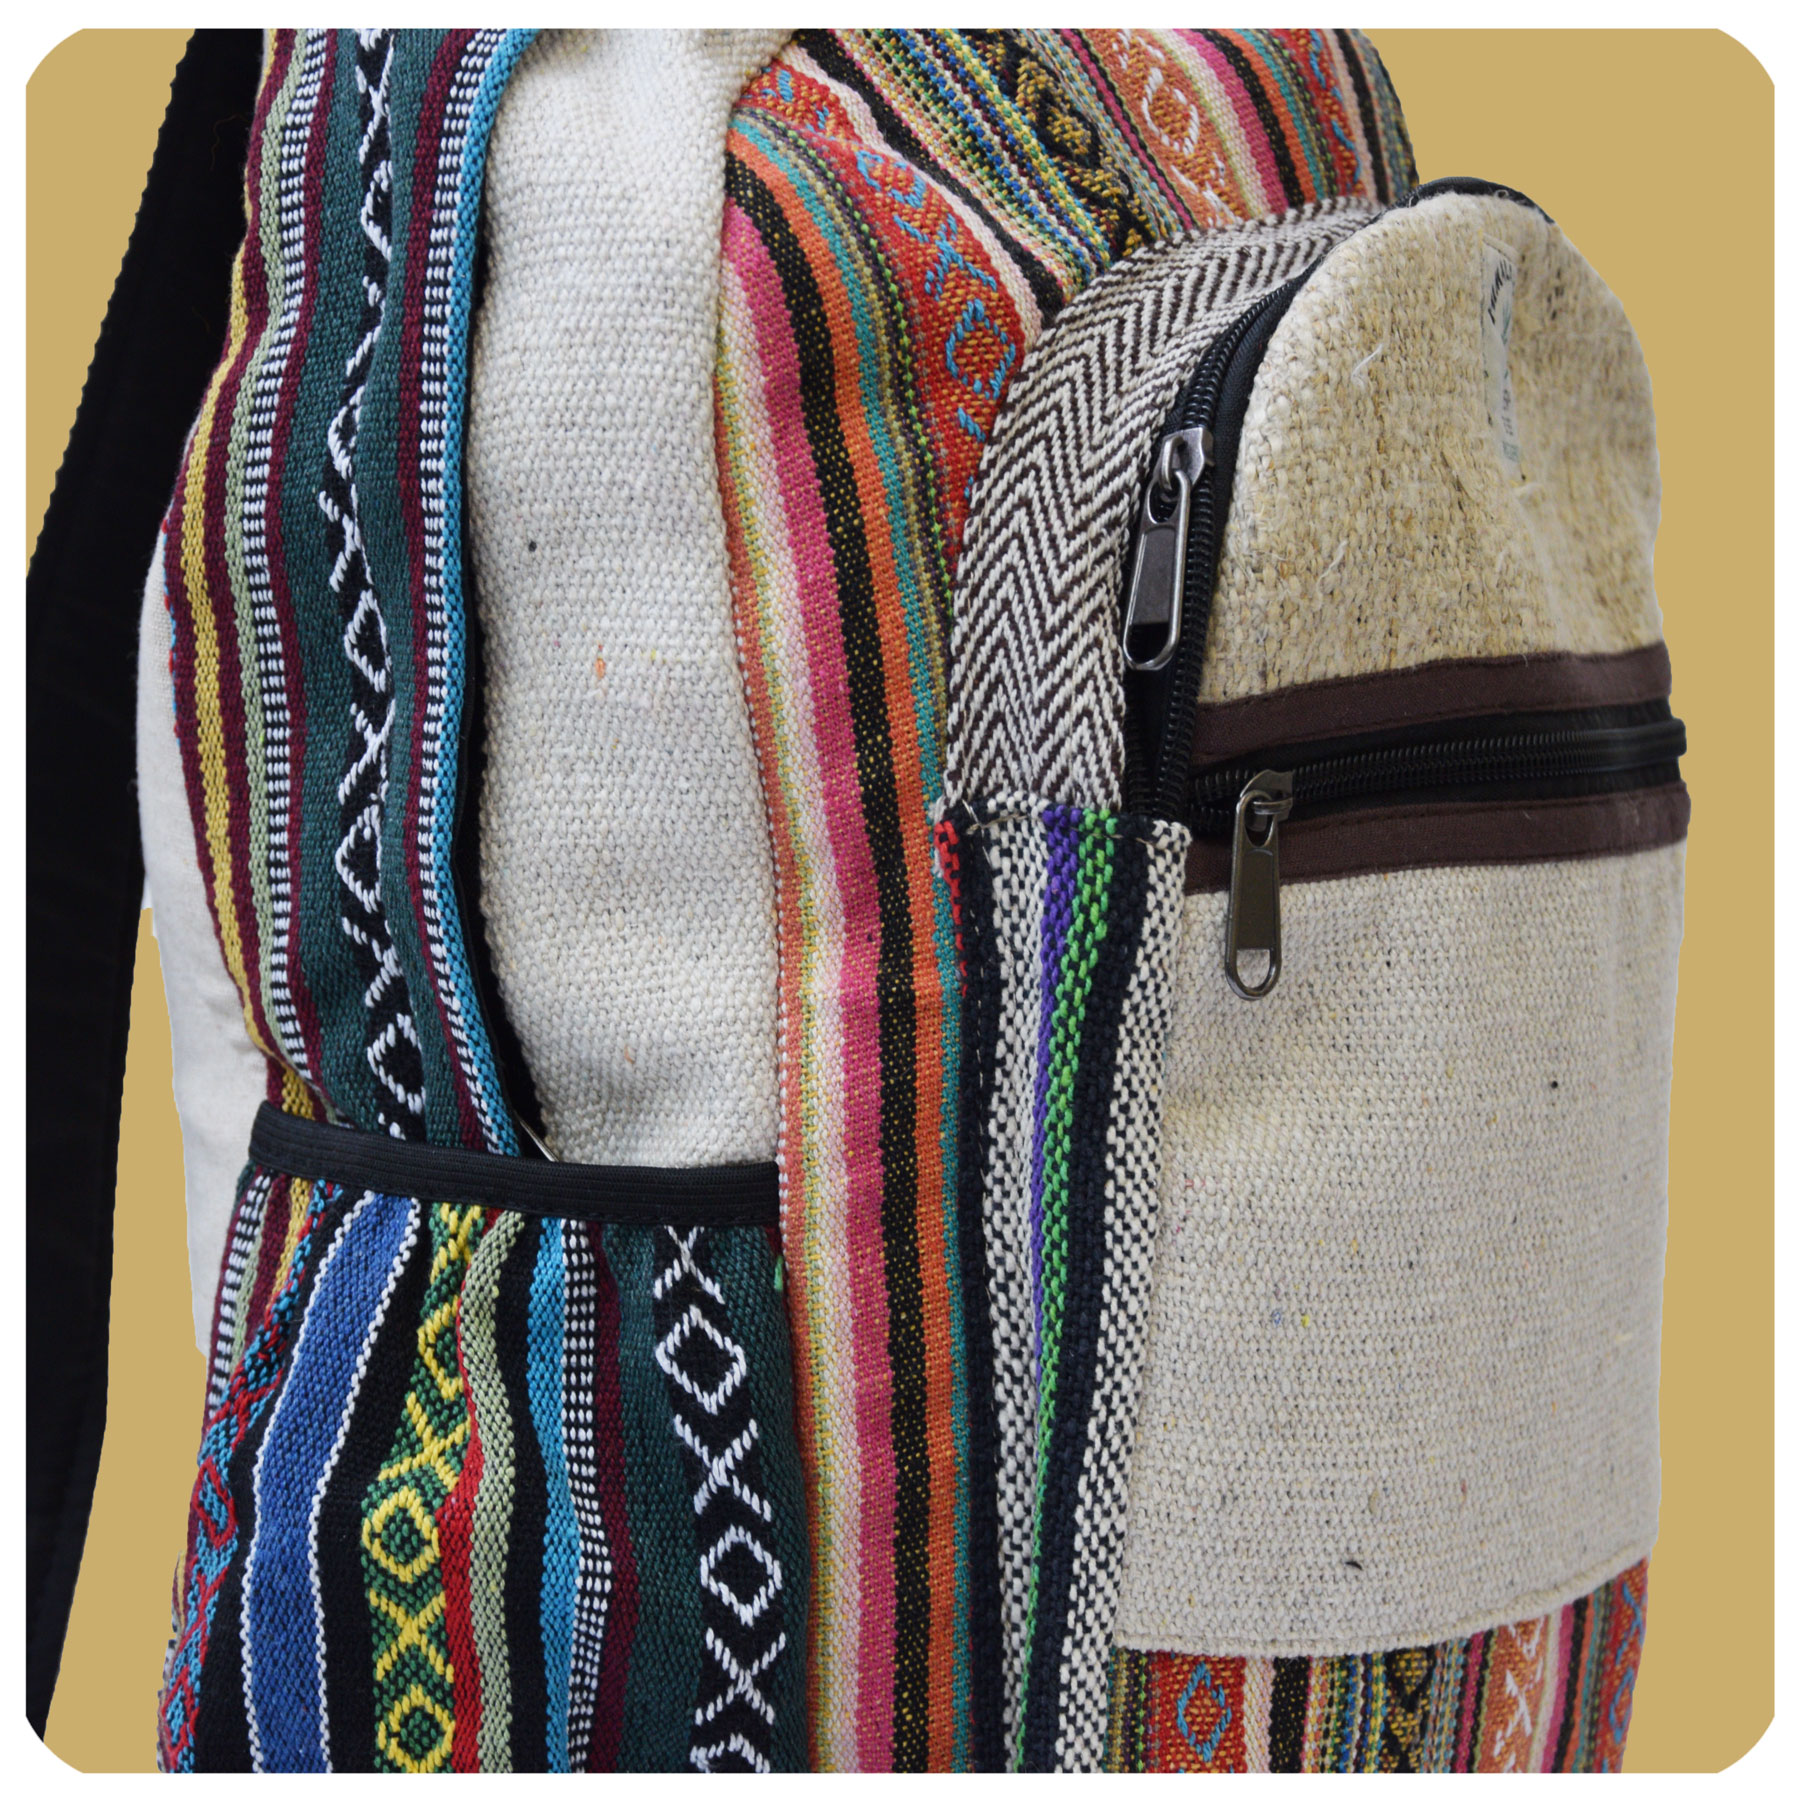 Hanf Rucksack Beige Ethno Backpack Nepal Hippie Tasche Beutel Goa Vintage HR4 